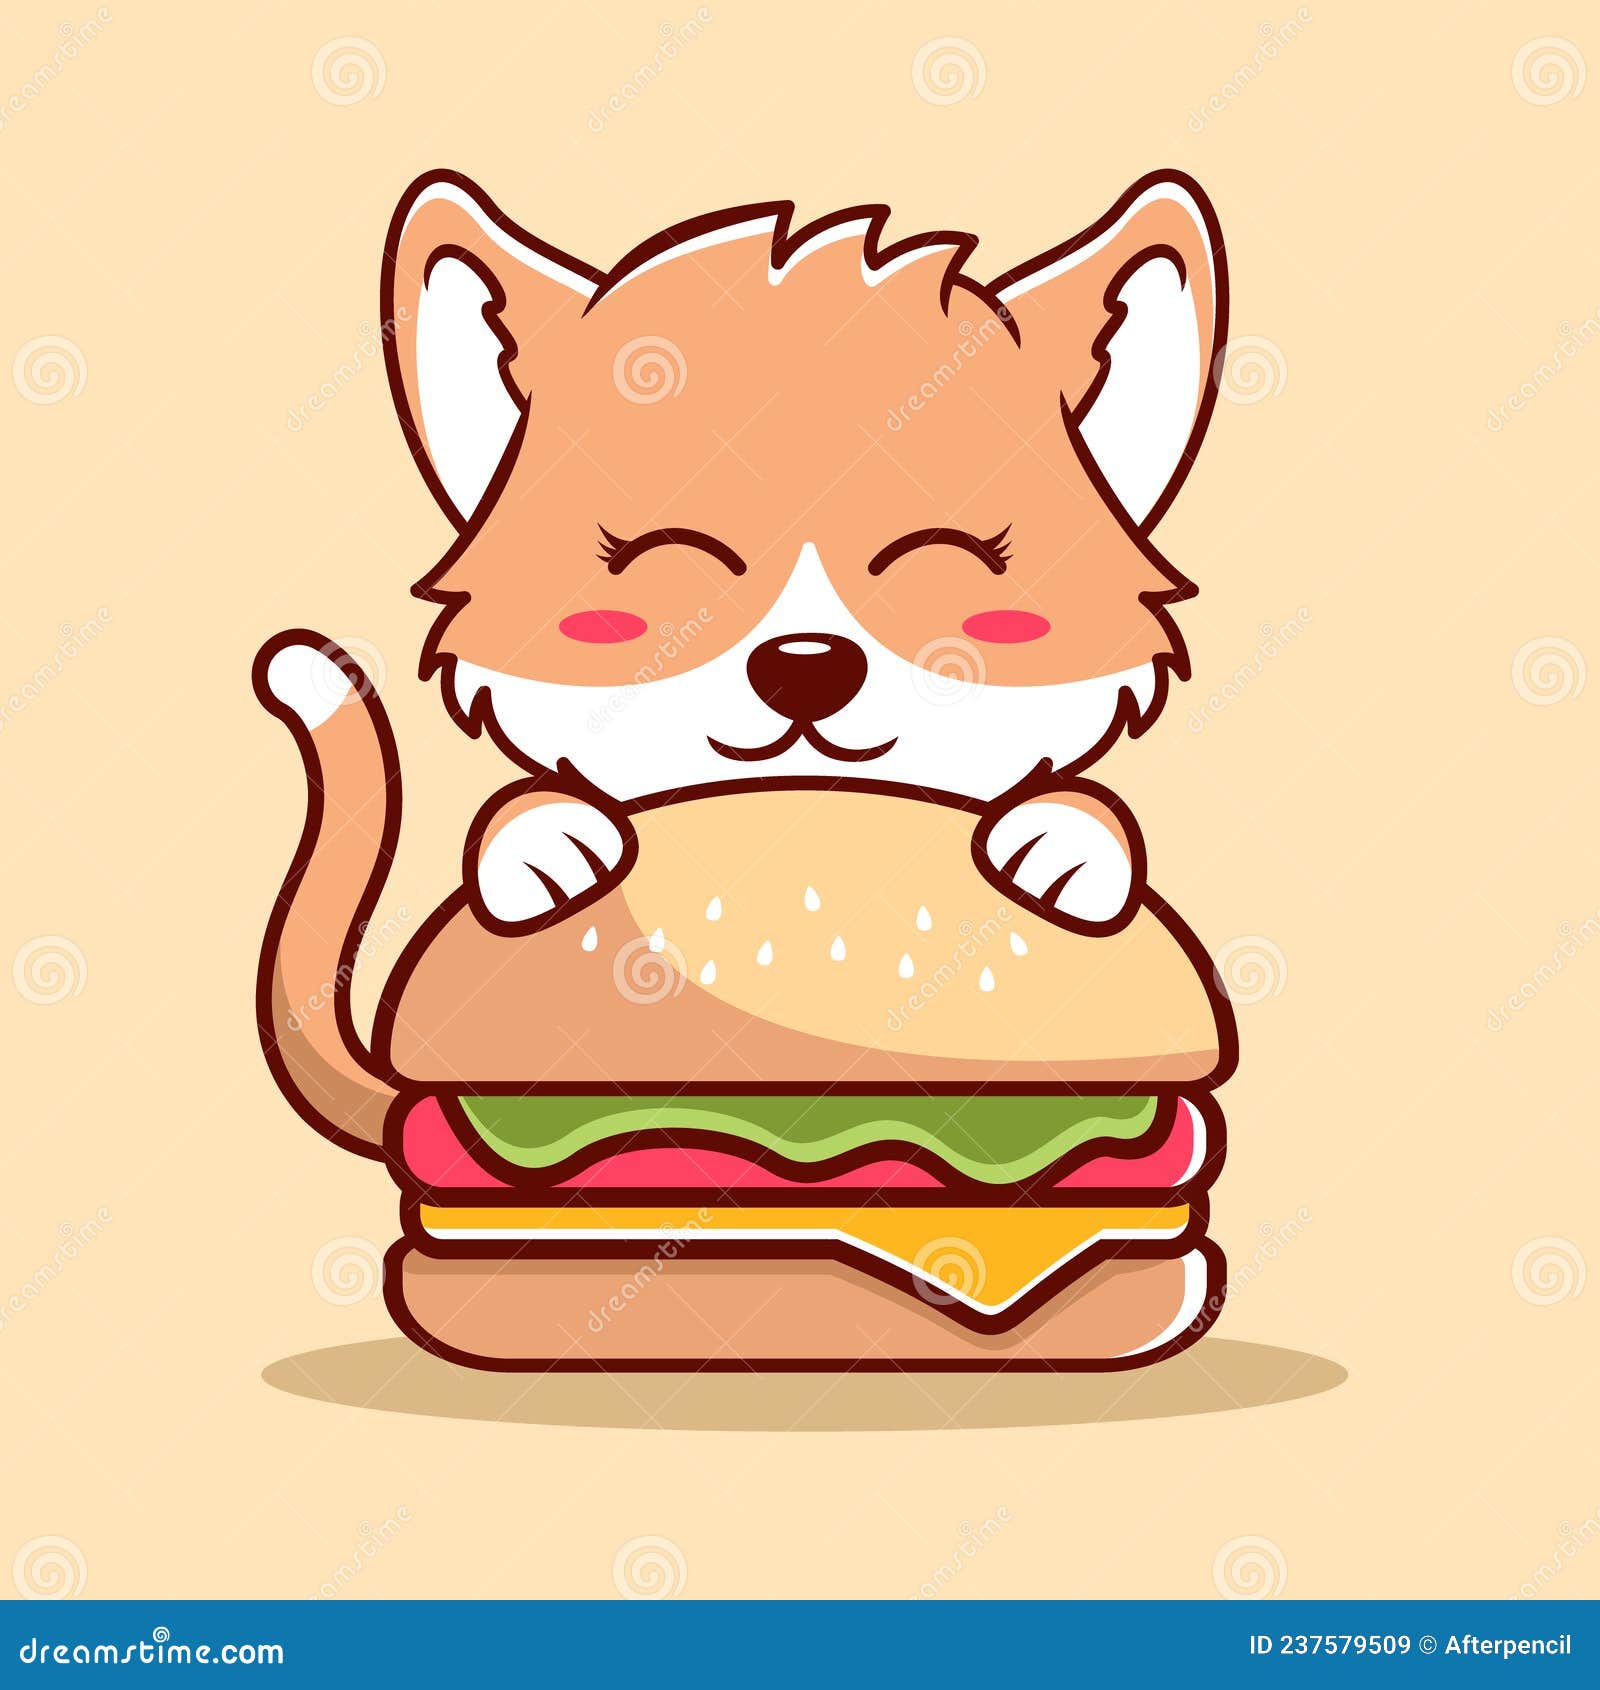 Each 4" Squish Cat Burger 